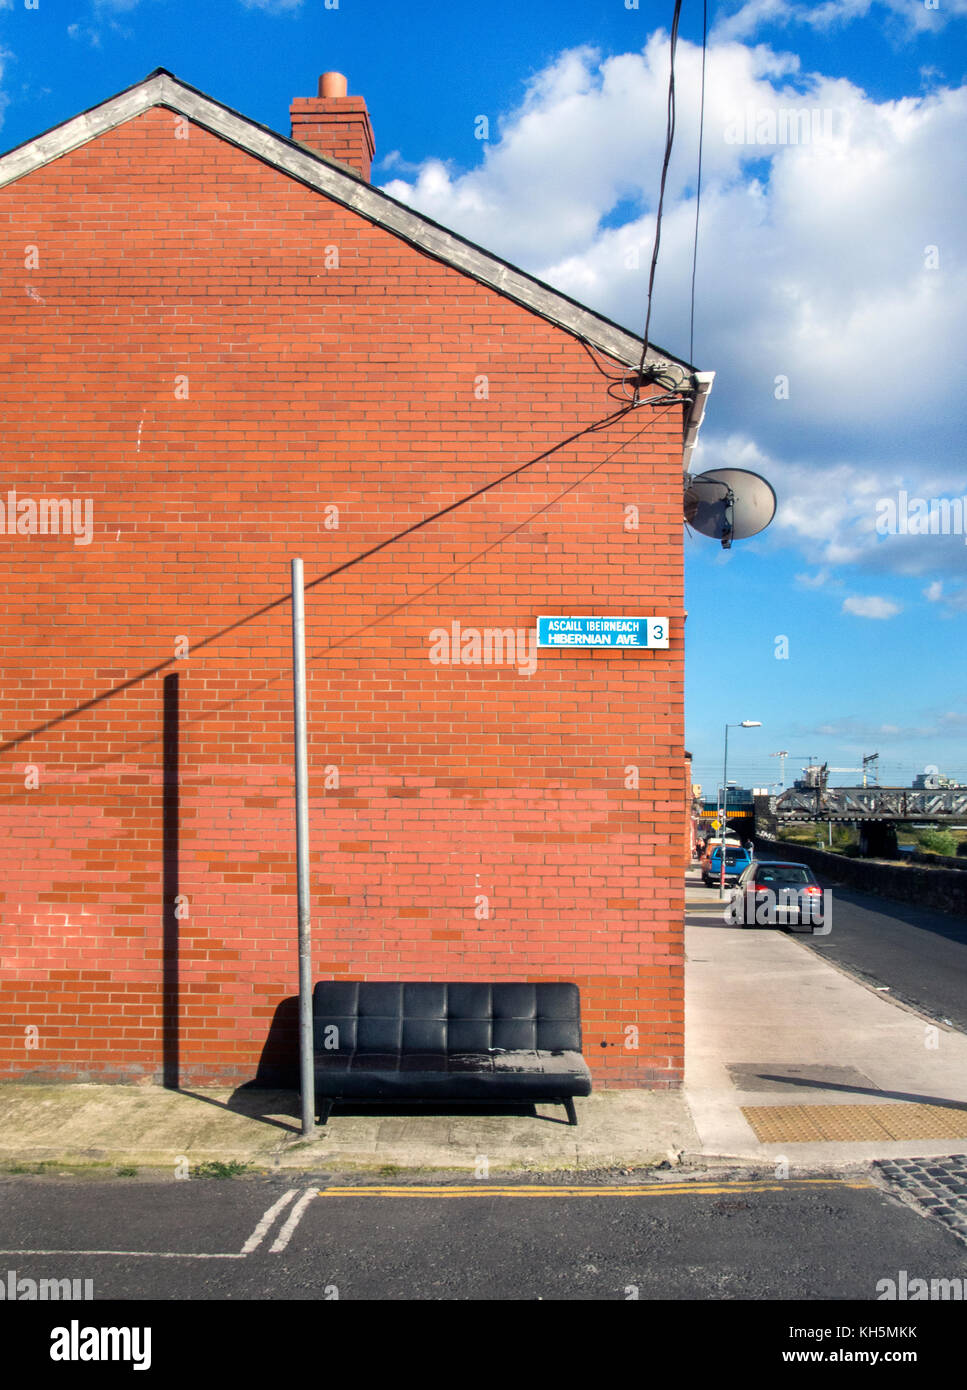 DUBLINO, IRLANDA - AGOSTO 09 2017: Un divano a sinistra in un angolo di strada in una zona della classe operaia di Dublino, Irlanda Foto Stock